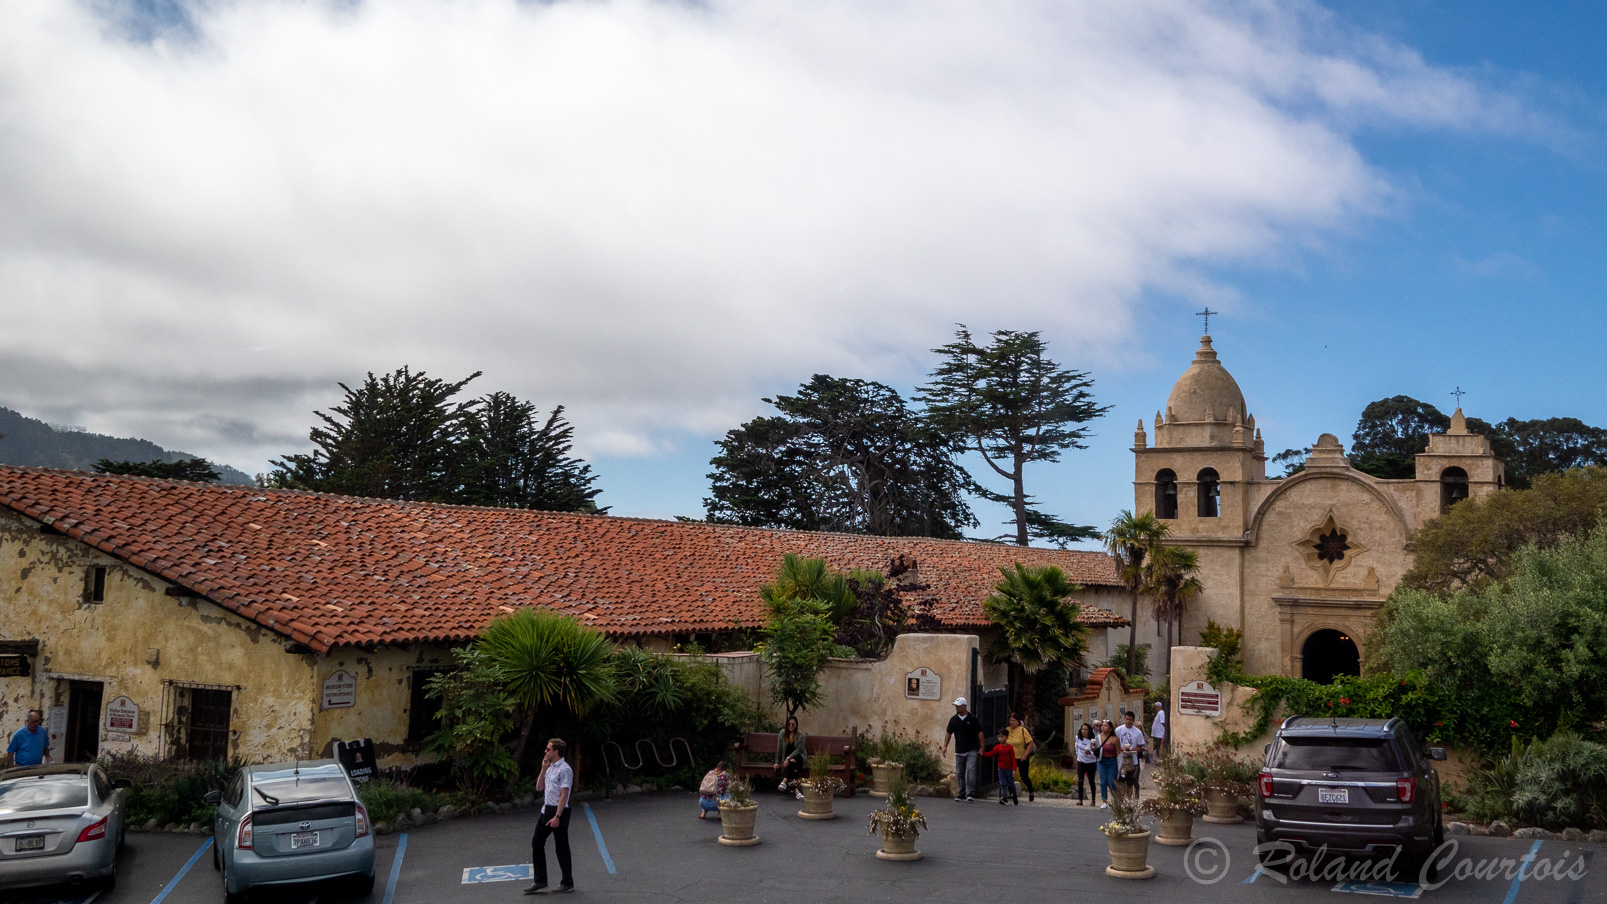 De nos jours, la mission est un des sites touristiques les plus populaires de la région de Monterey et est classée monument historique.